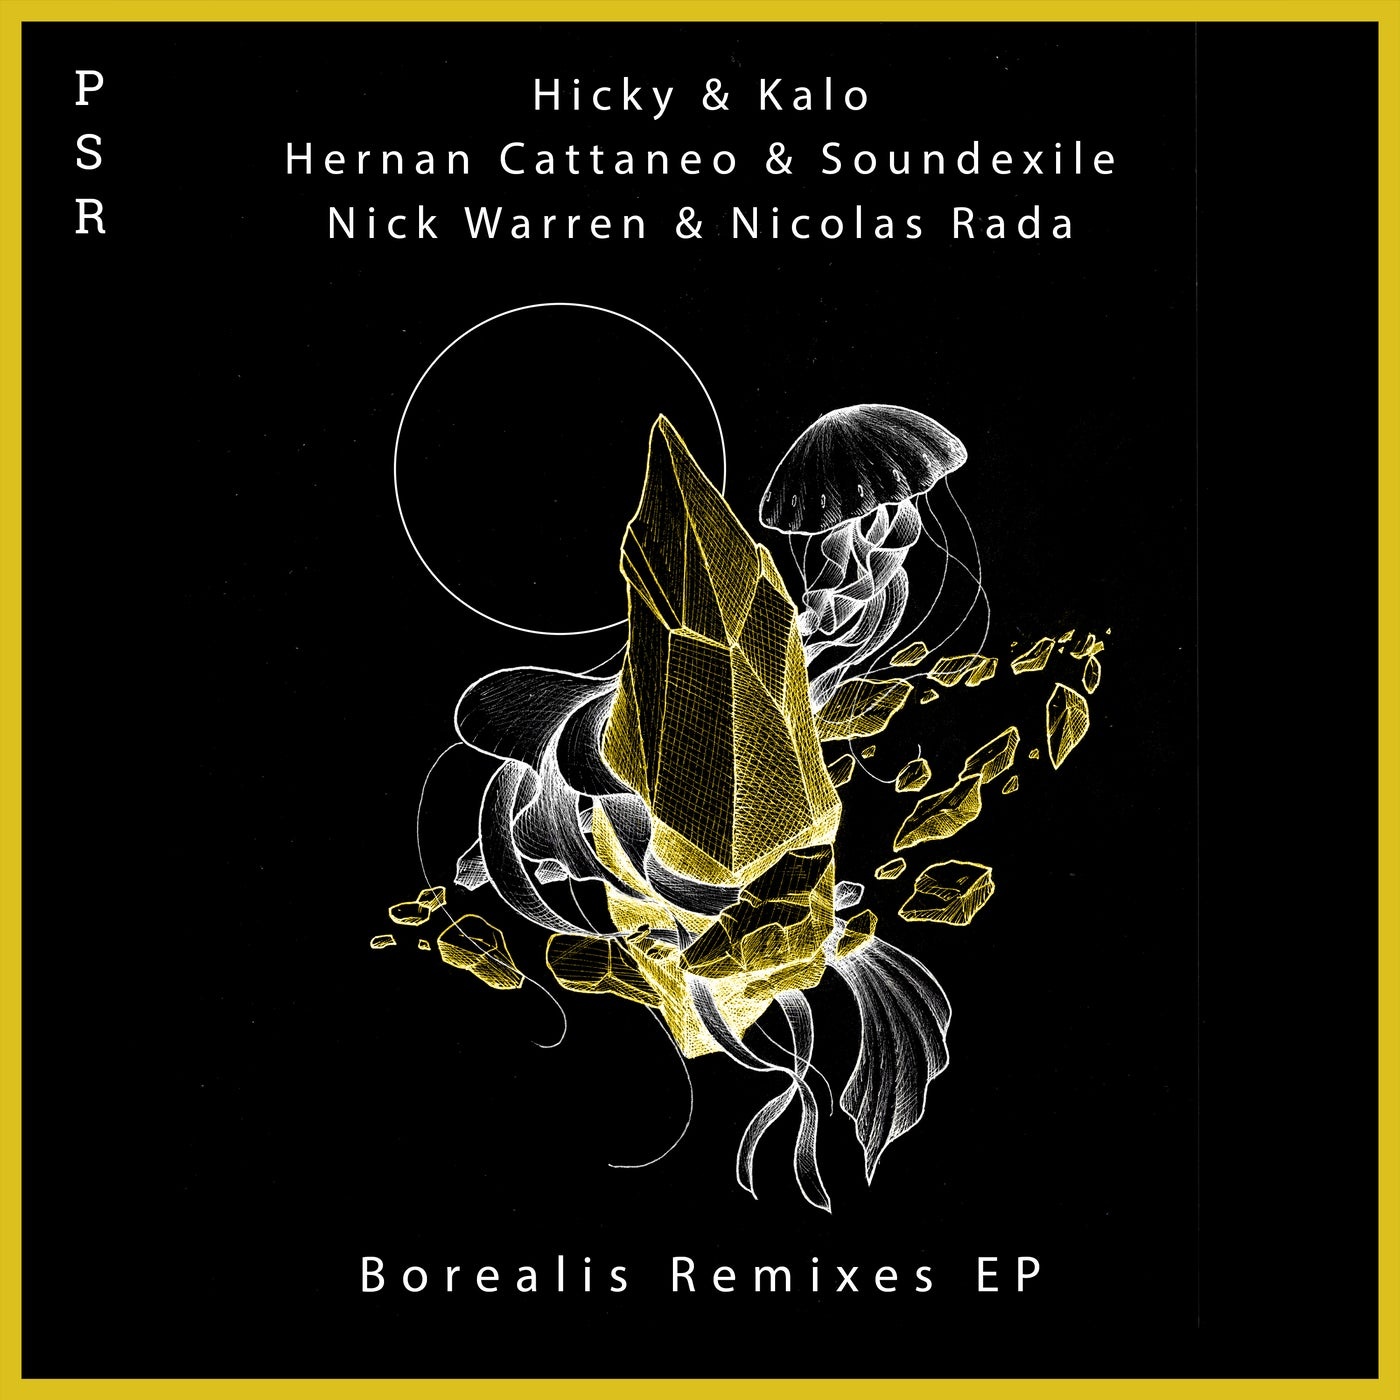 Hicky & Kalo - Borealis Remixes Ep [PSR033]